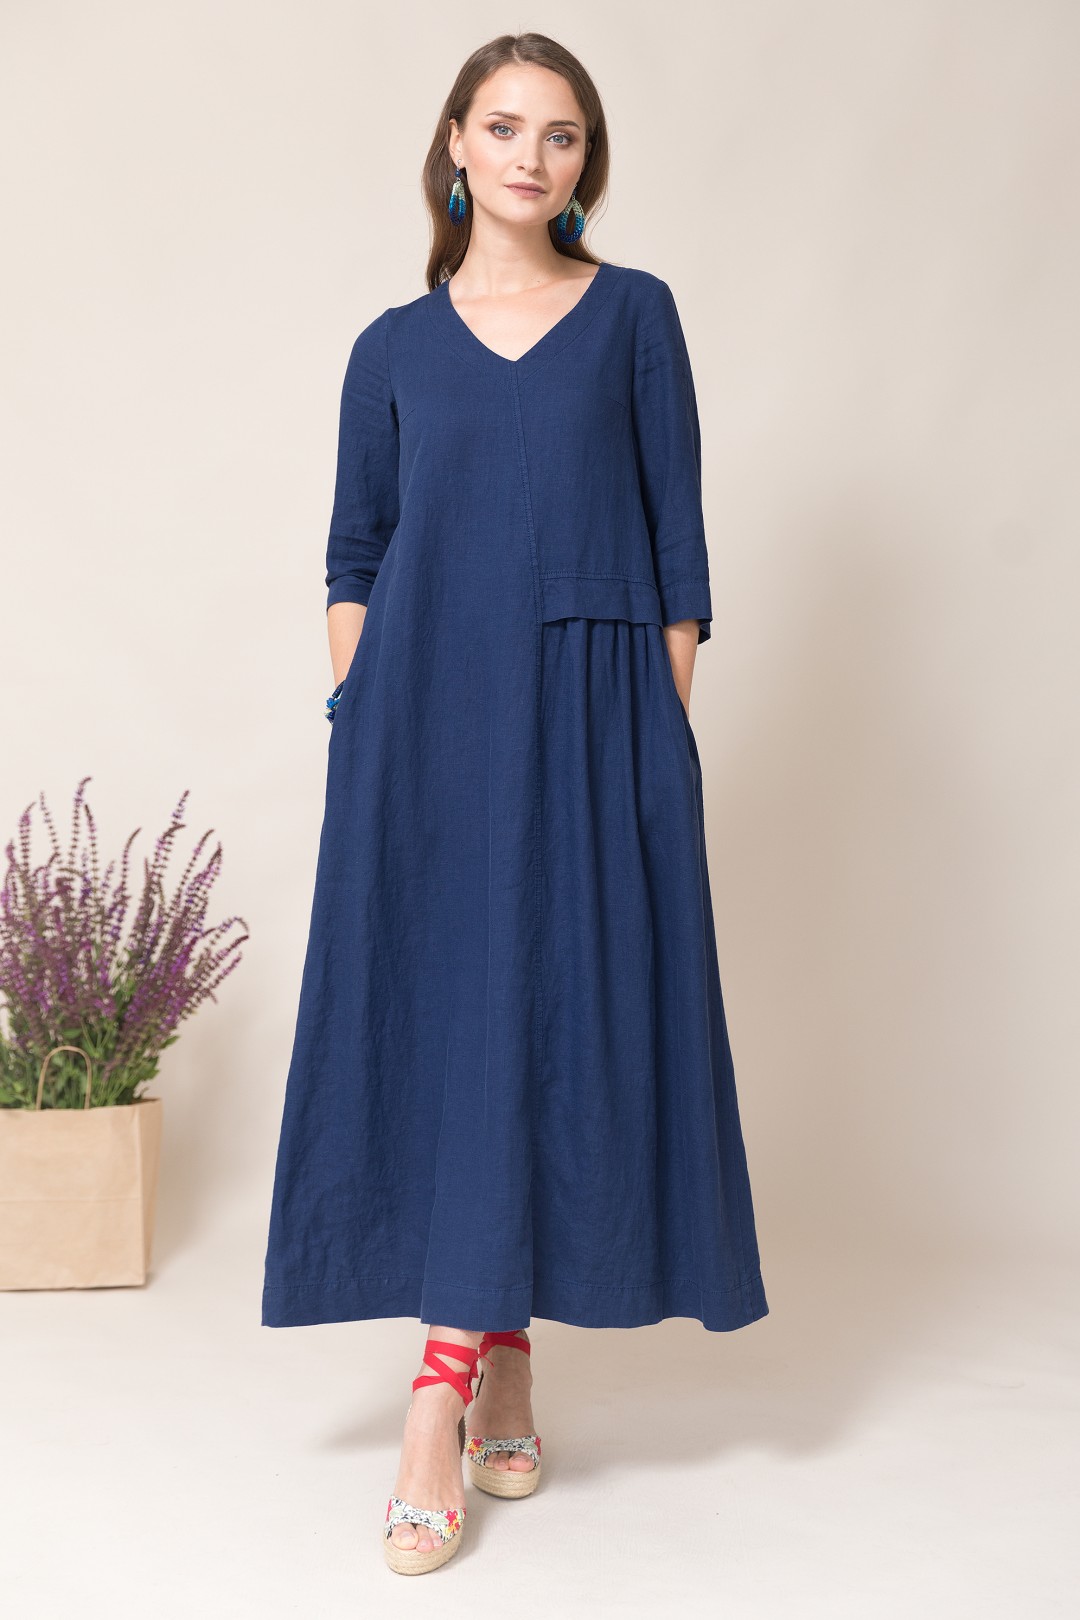 Платье Ружана 367-2 синий